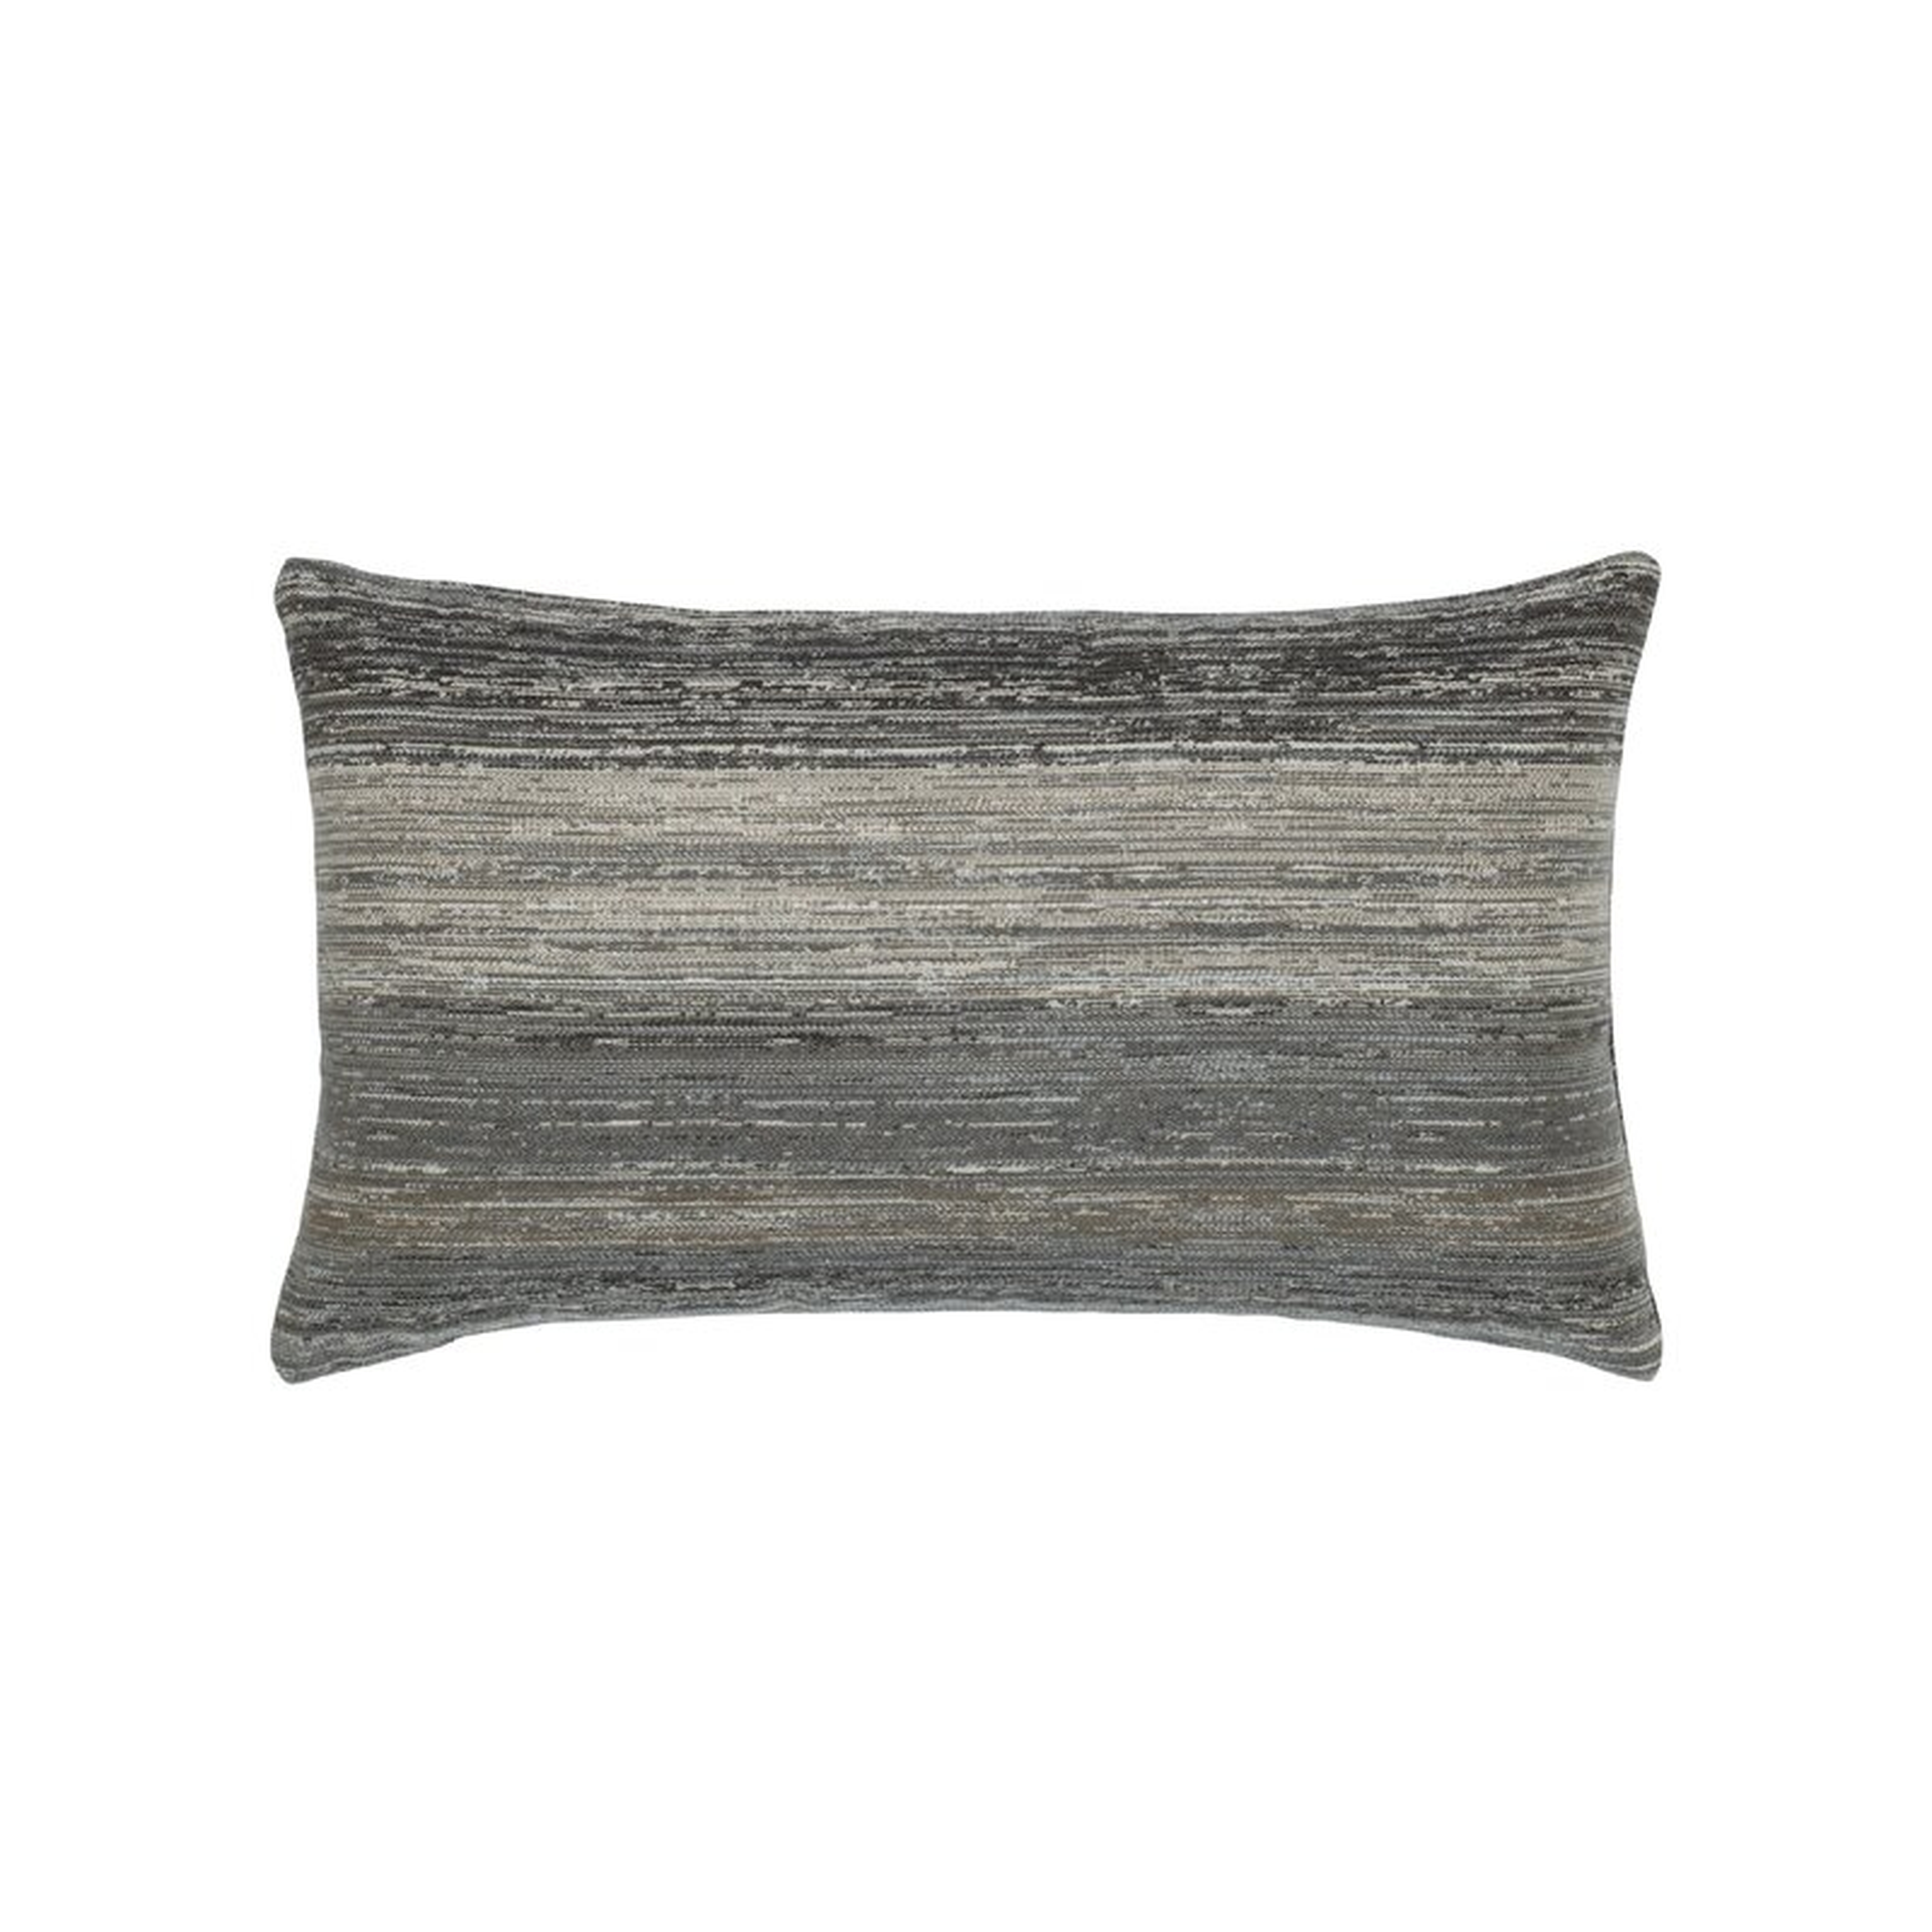 Elaine Smith Texture Lagoon Sunbrella Indoor/Outdoor Striped Lumbar Pillow Color: Brown/Gray - Perigold